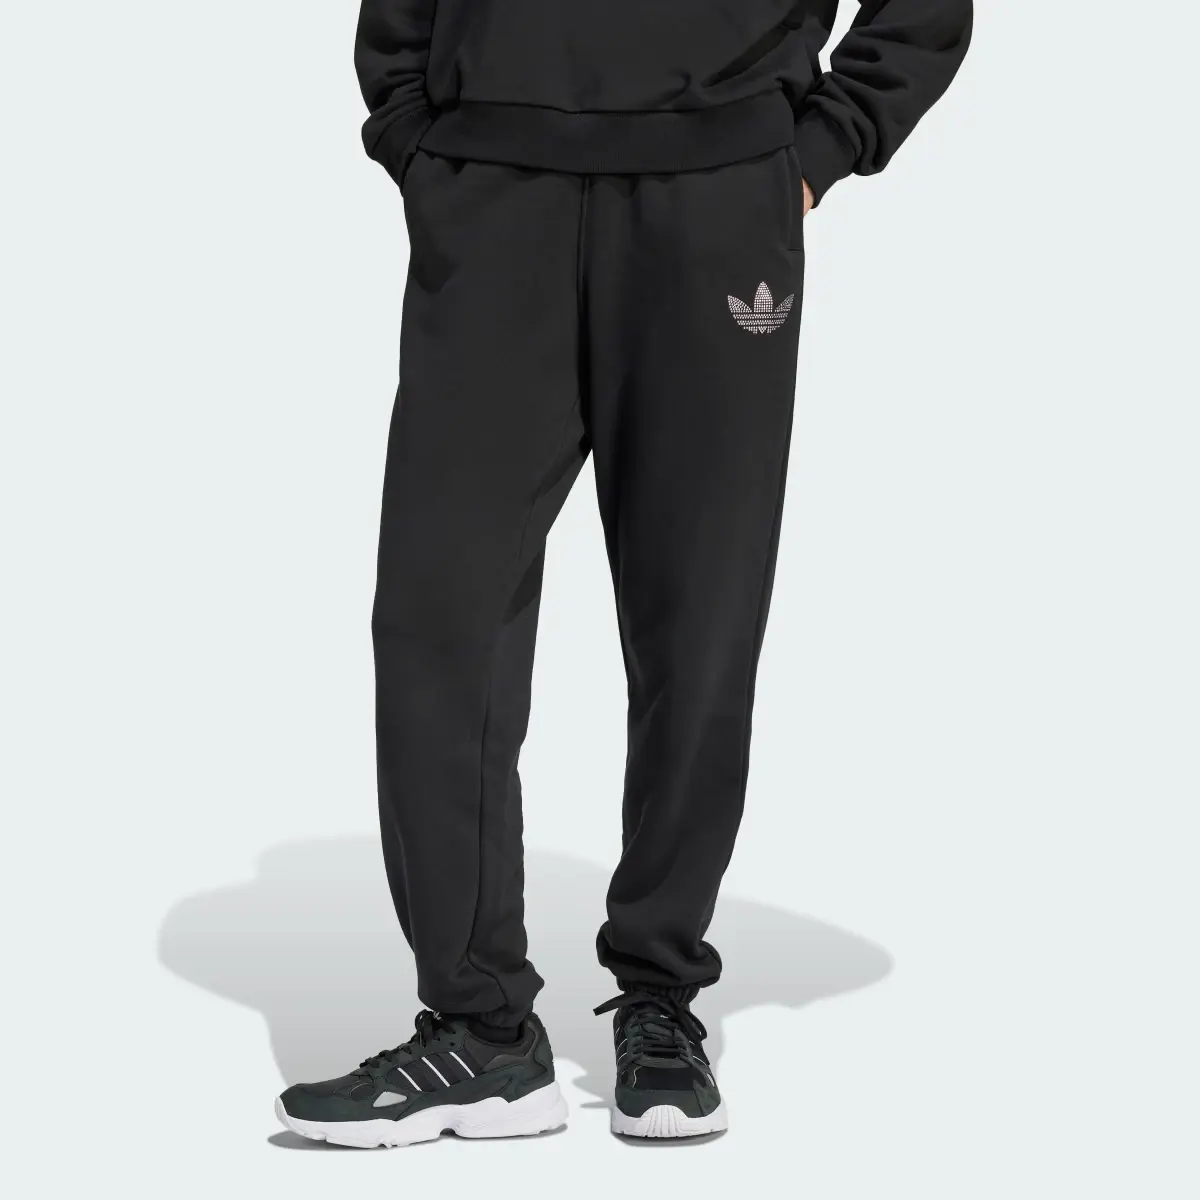 Adidas Spodnie dresowe Embellished. 1